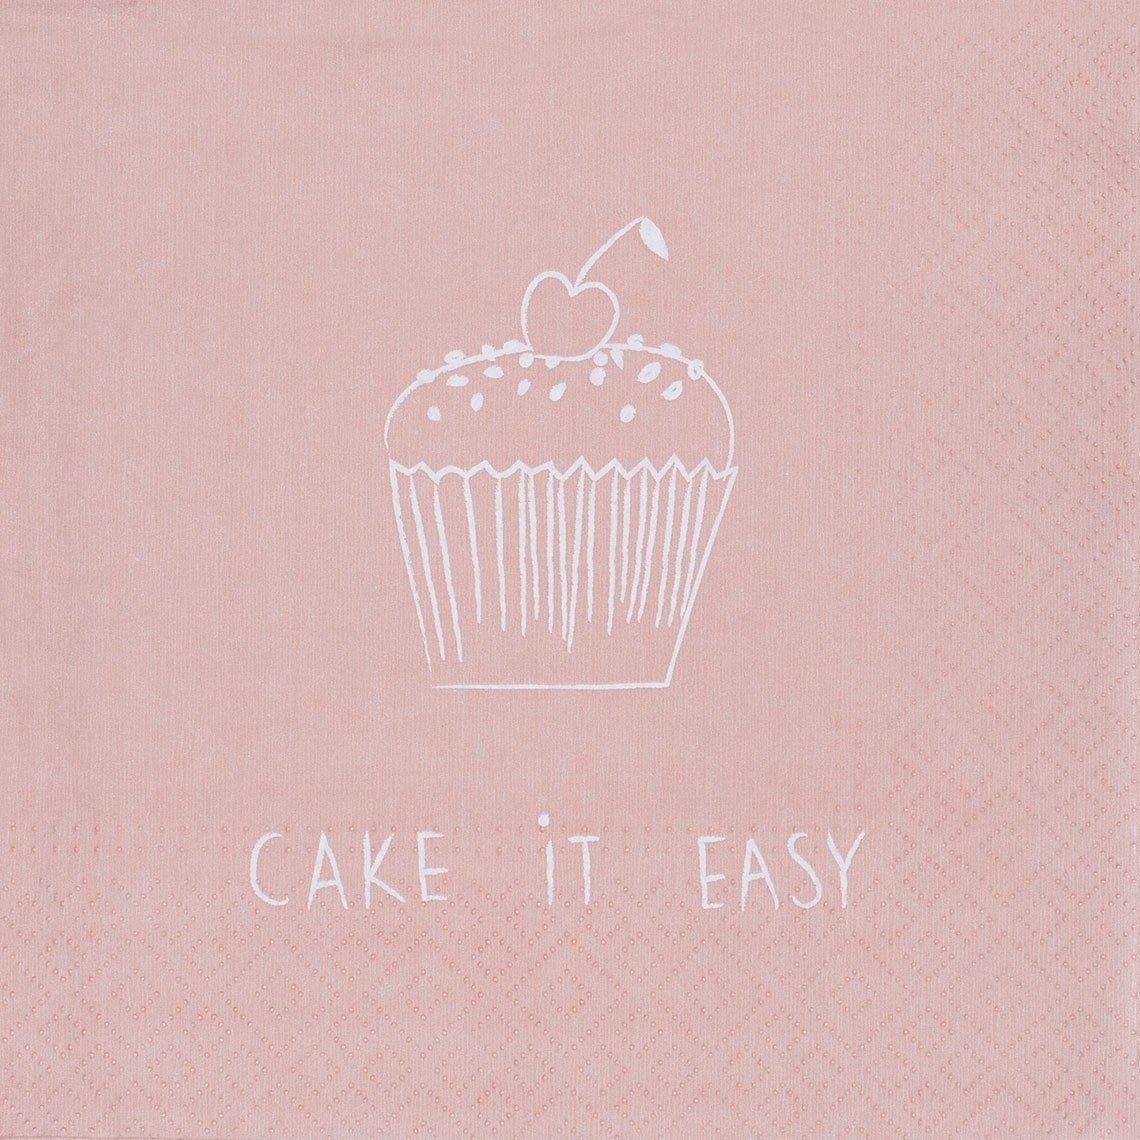 räder Serviette Cake it easy